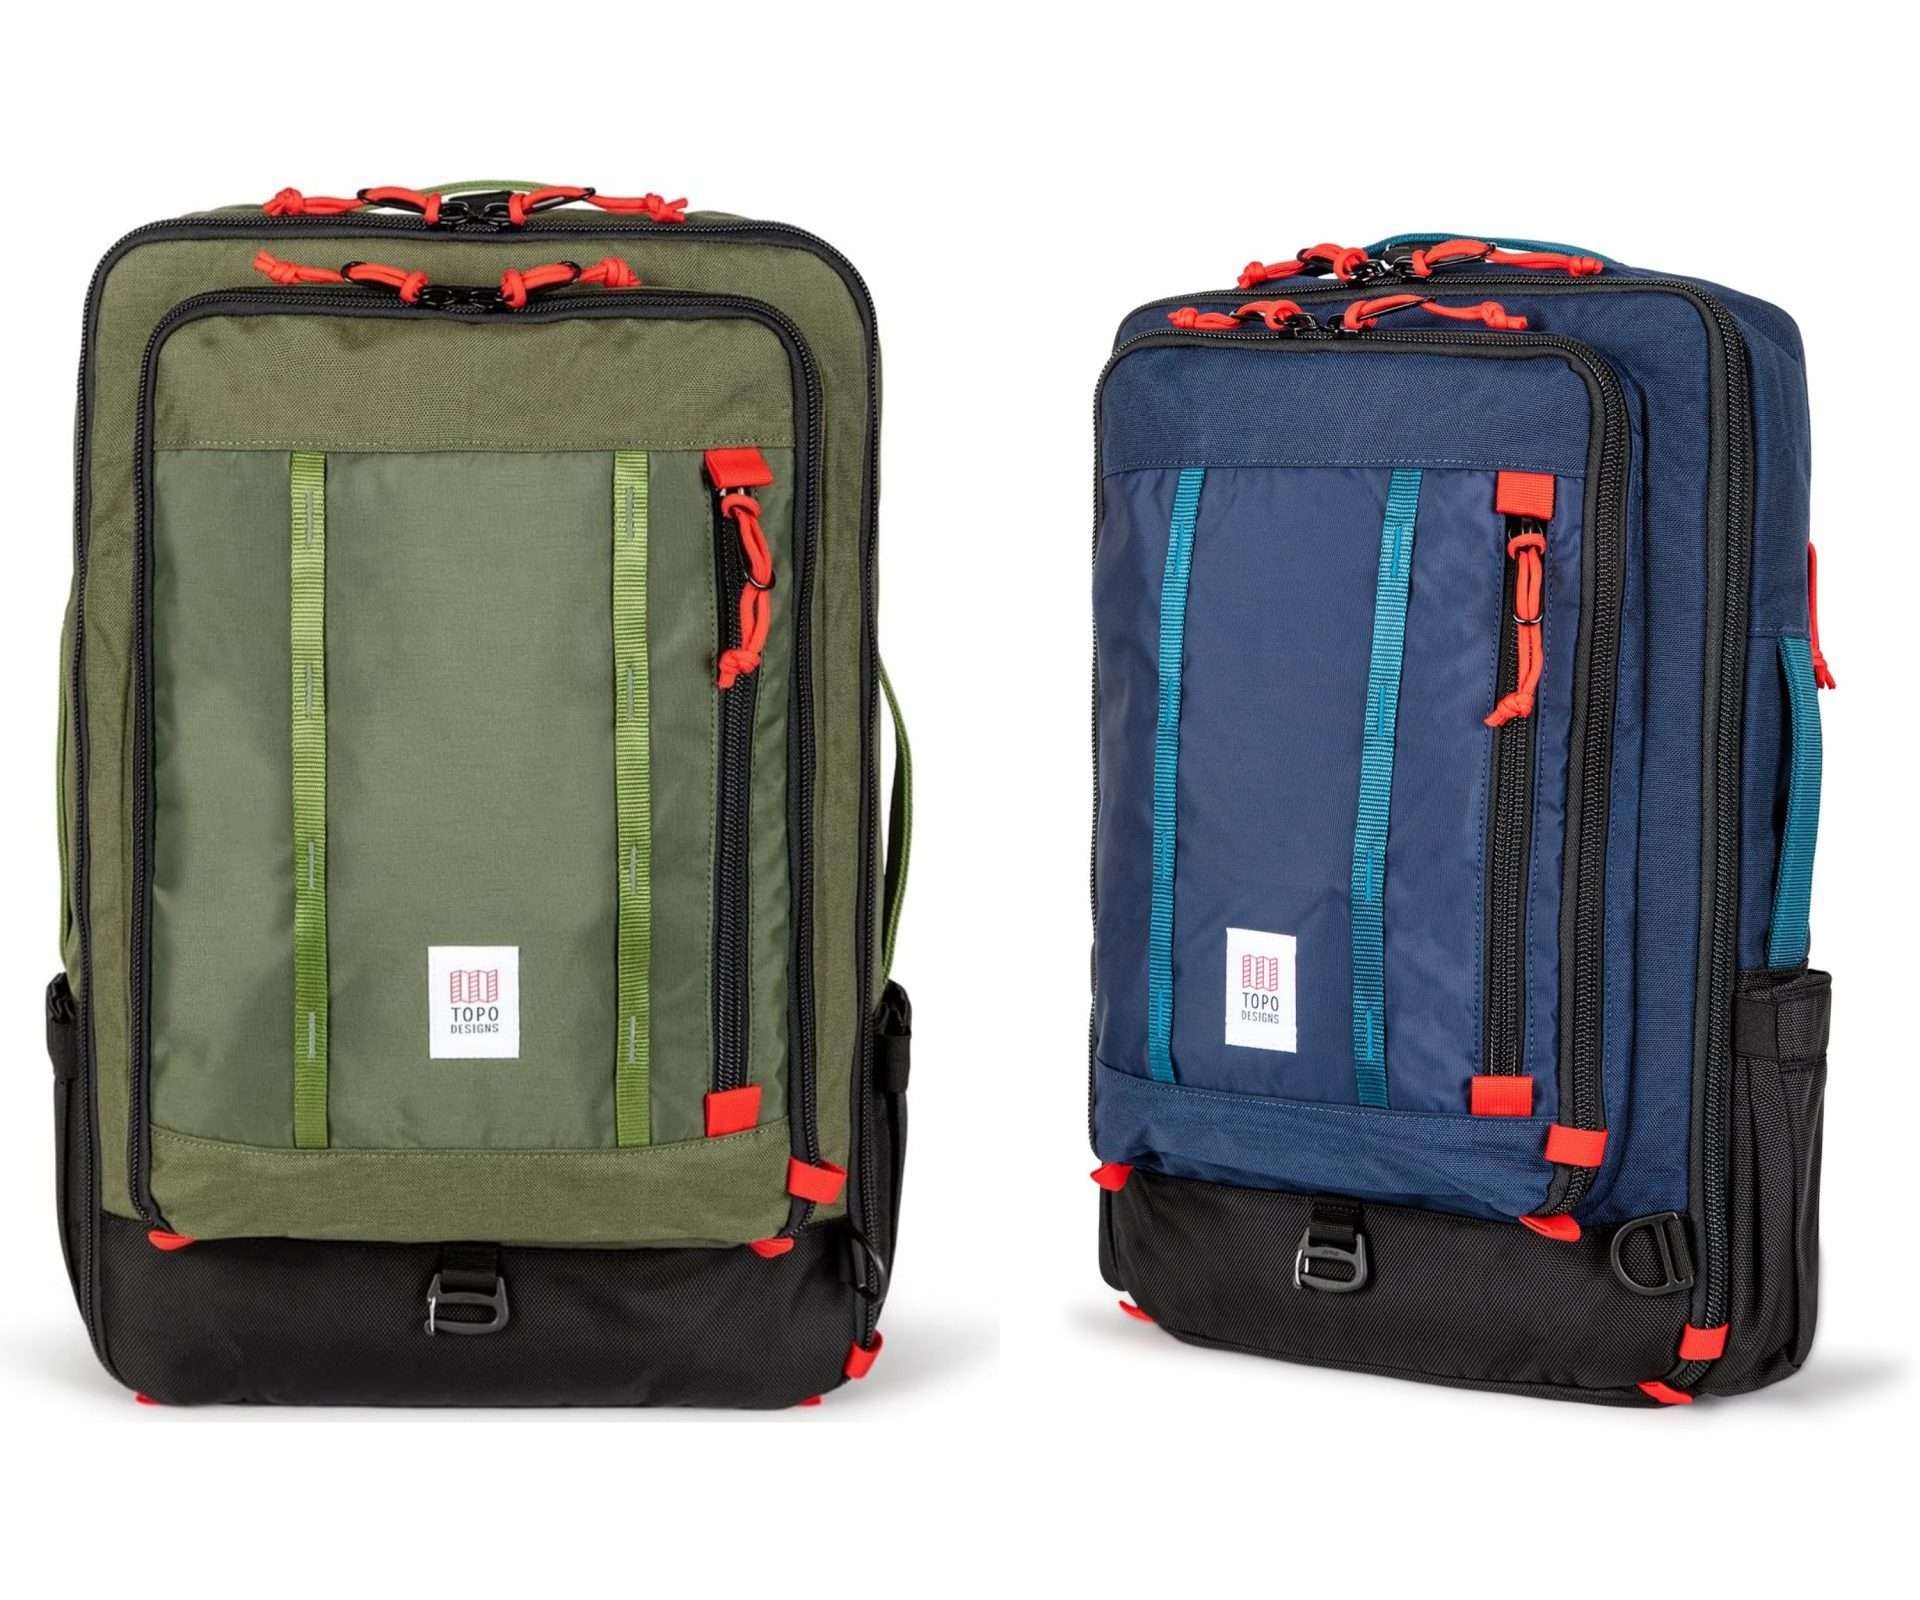 Topo Global 40L - best backpack for digital nomads